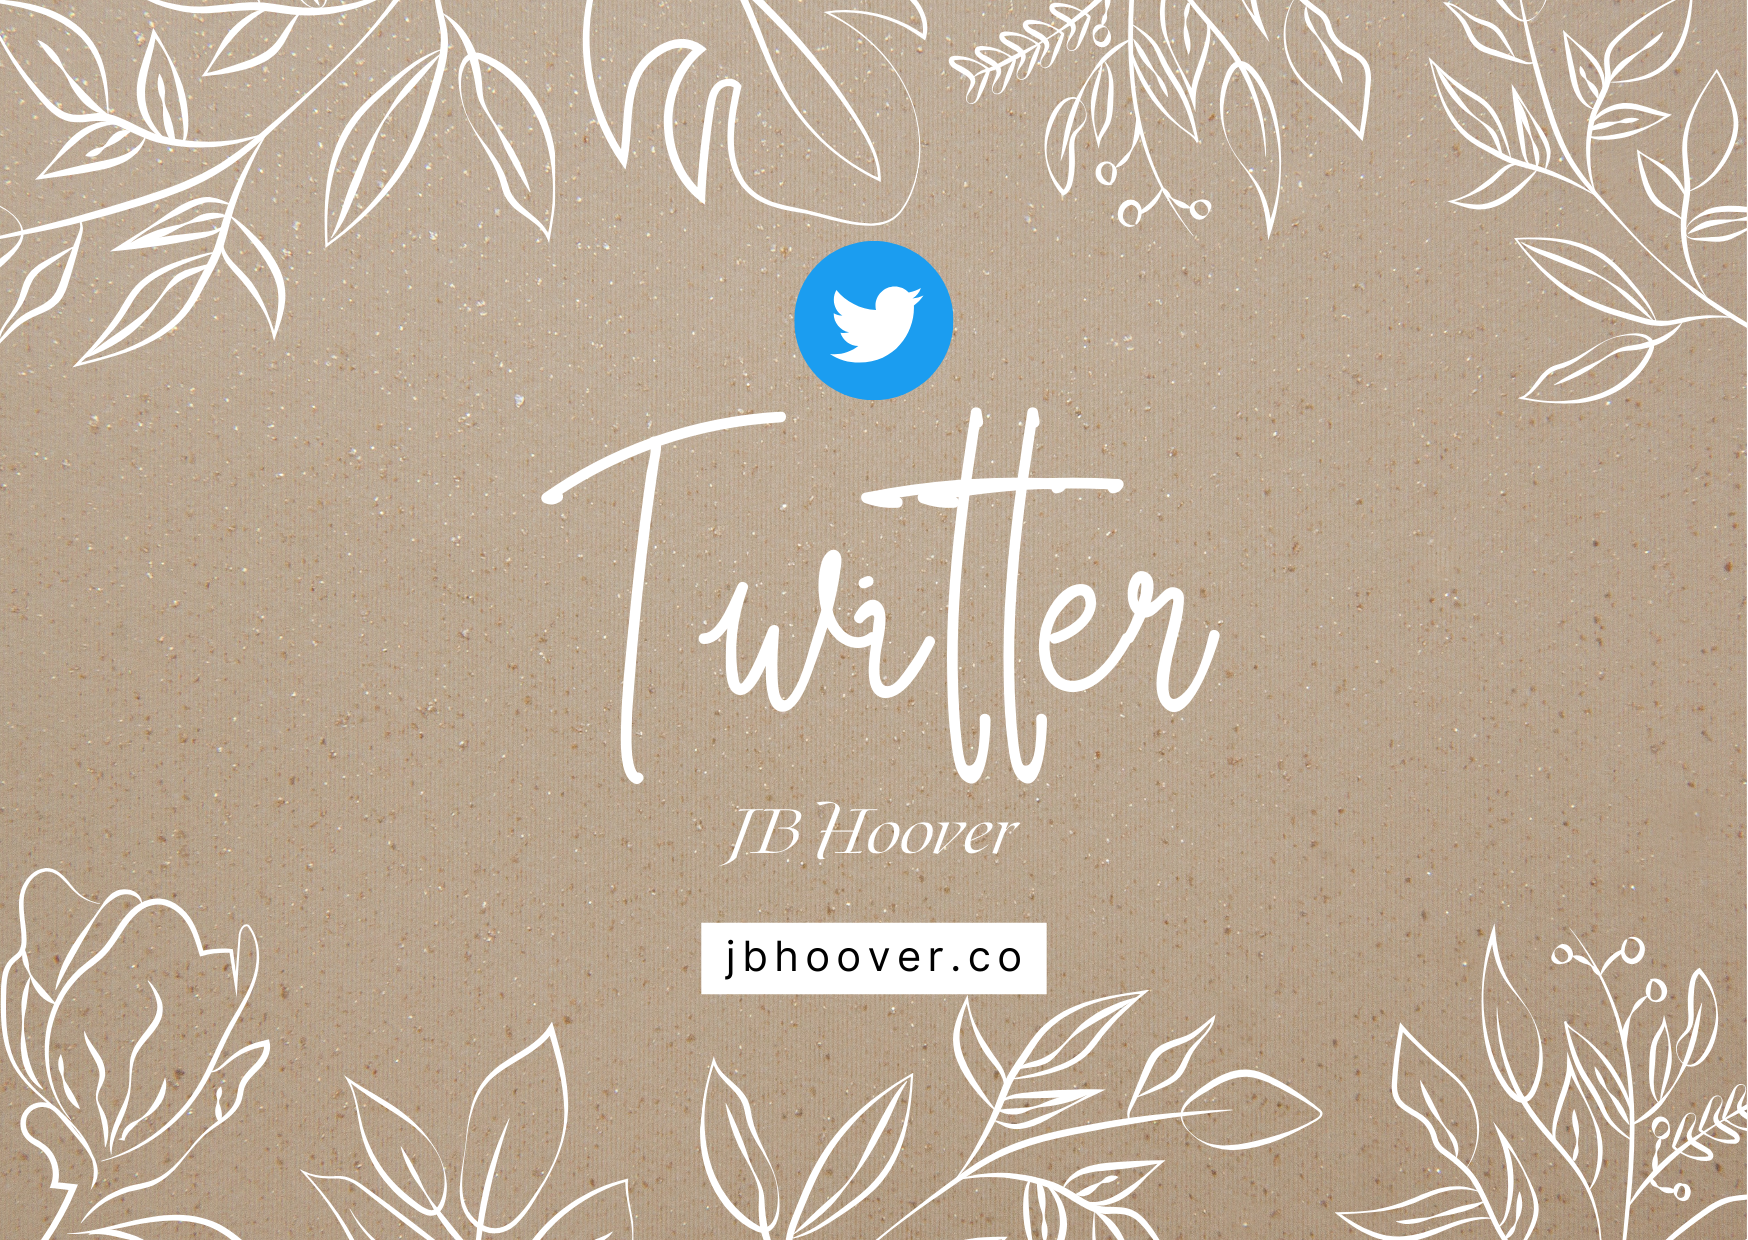 JB Hoover Twitter